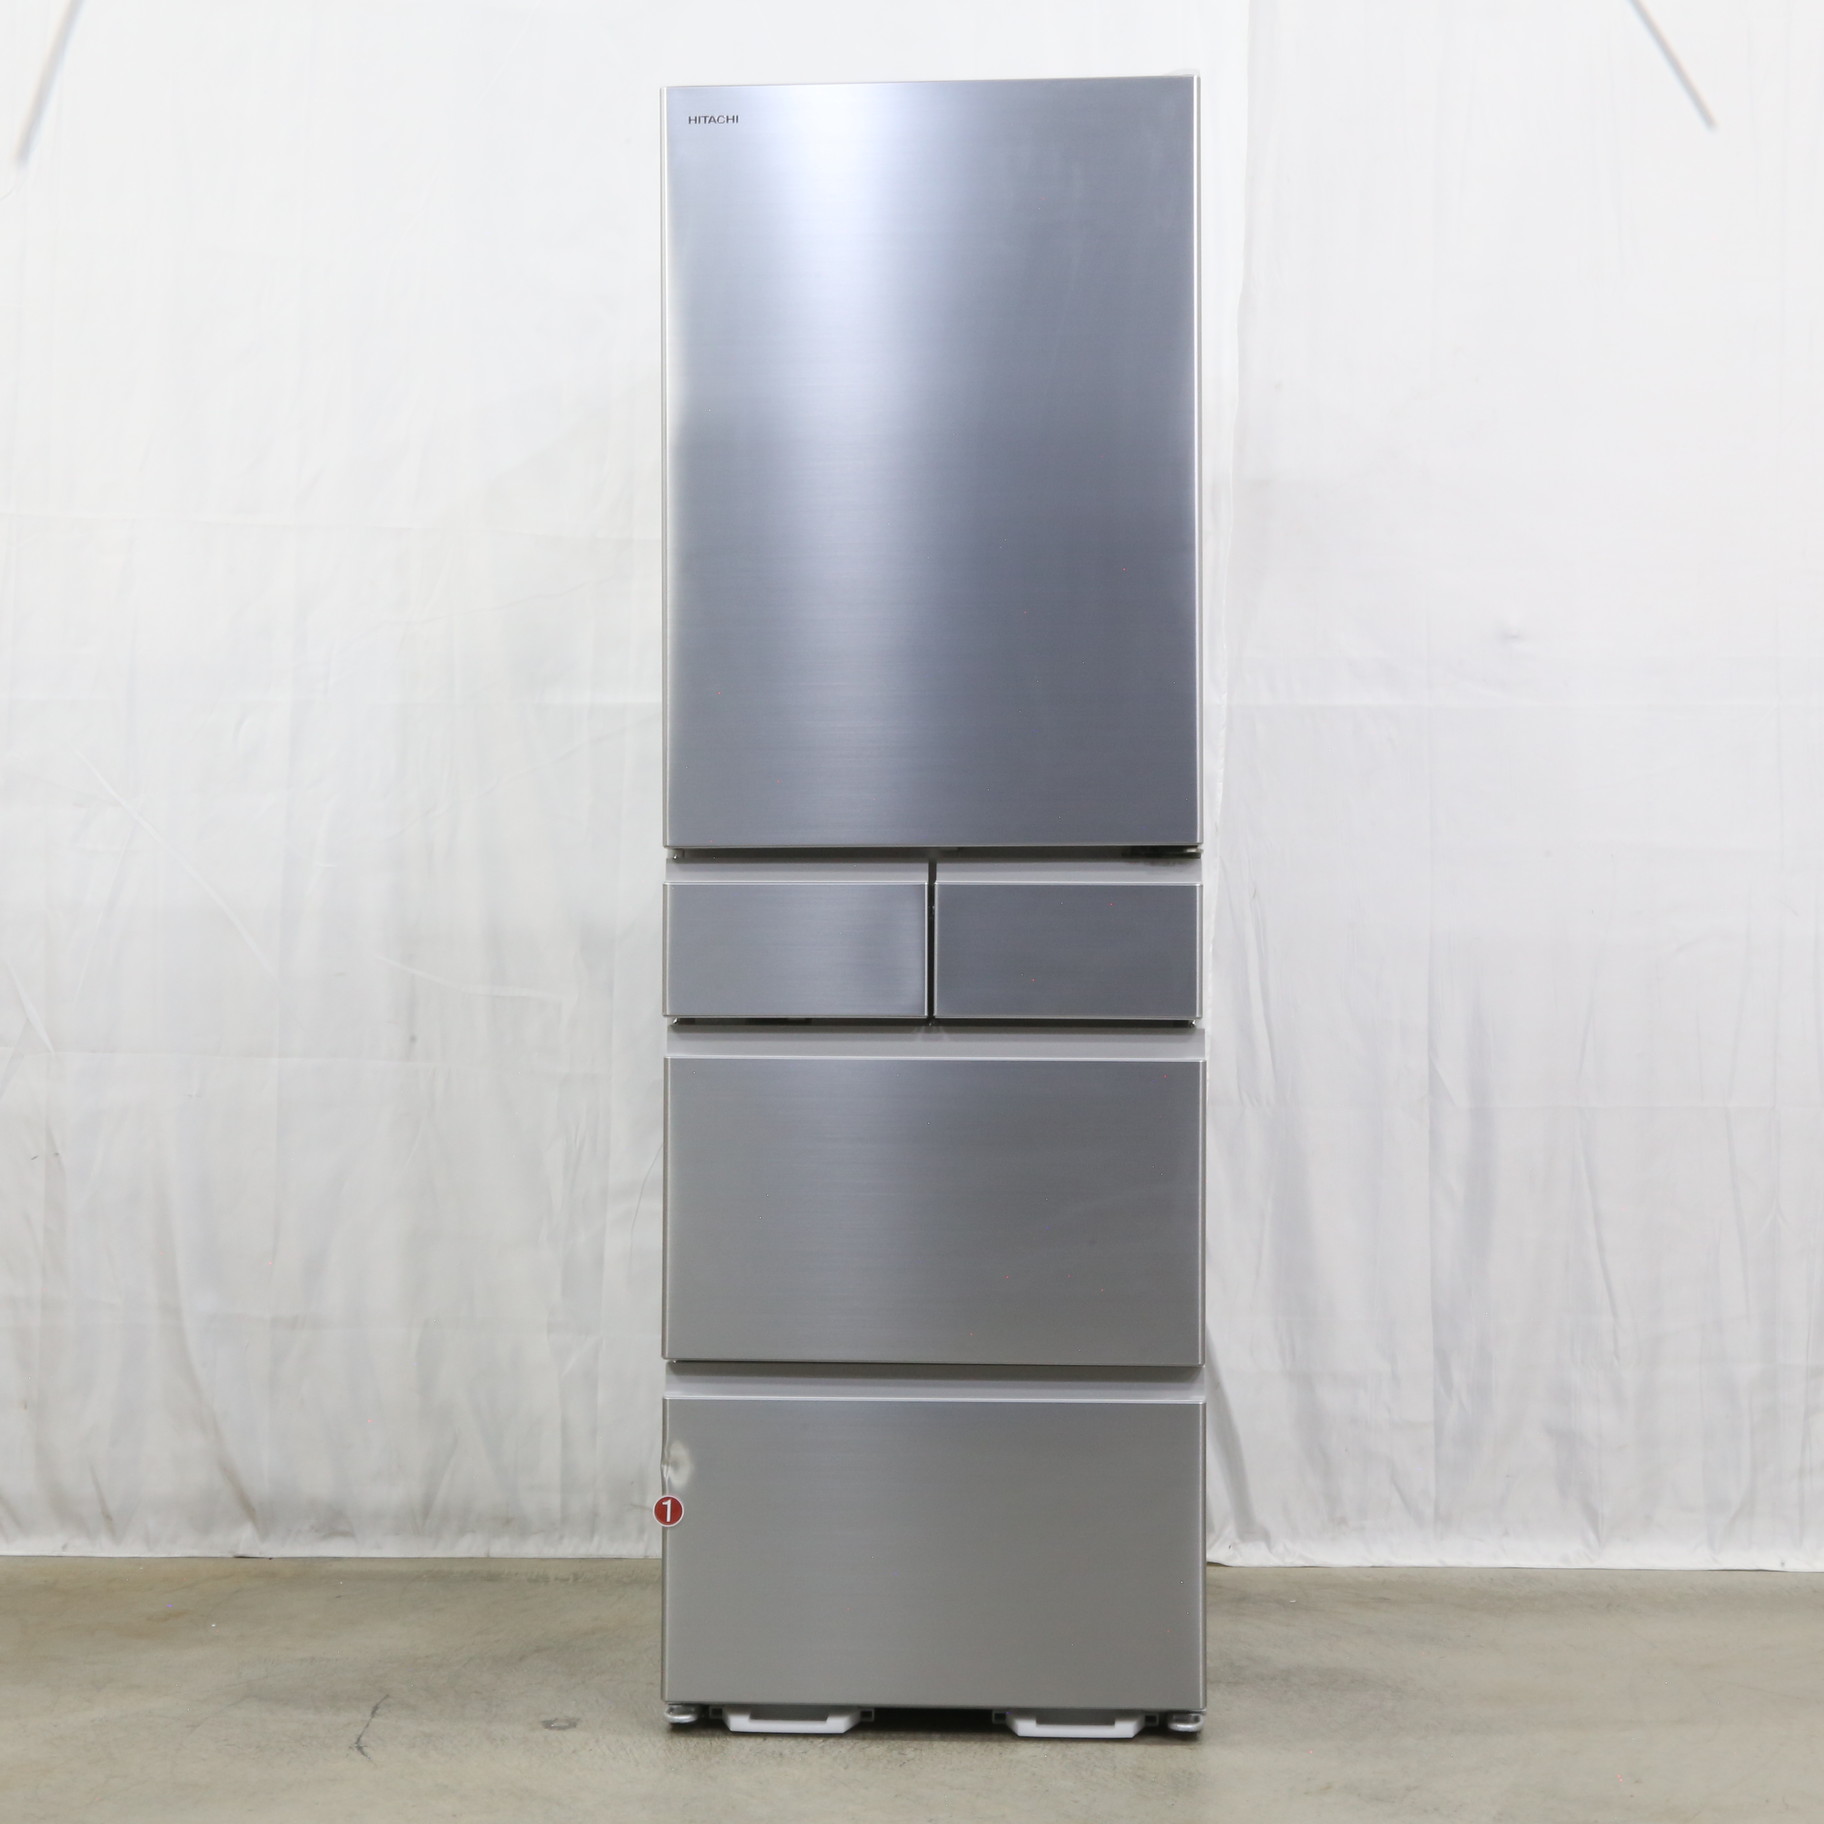 日立 冷凍冷蔵庫 シルバー R-HS47SL-S - キッチン家電